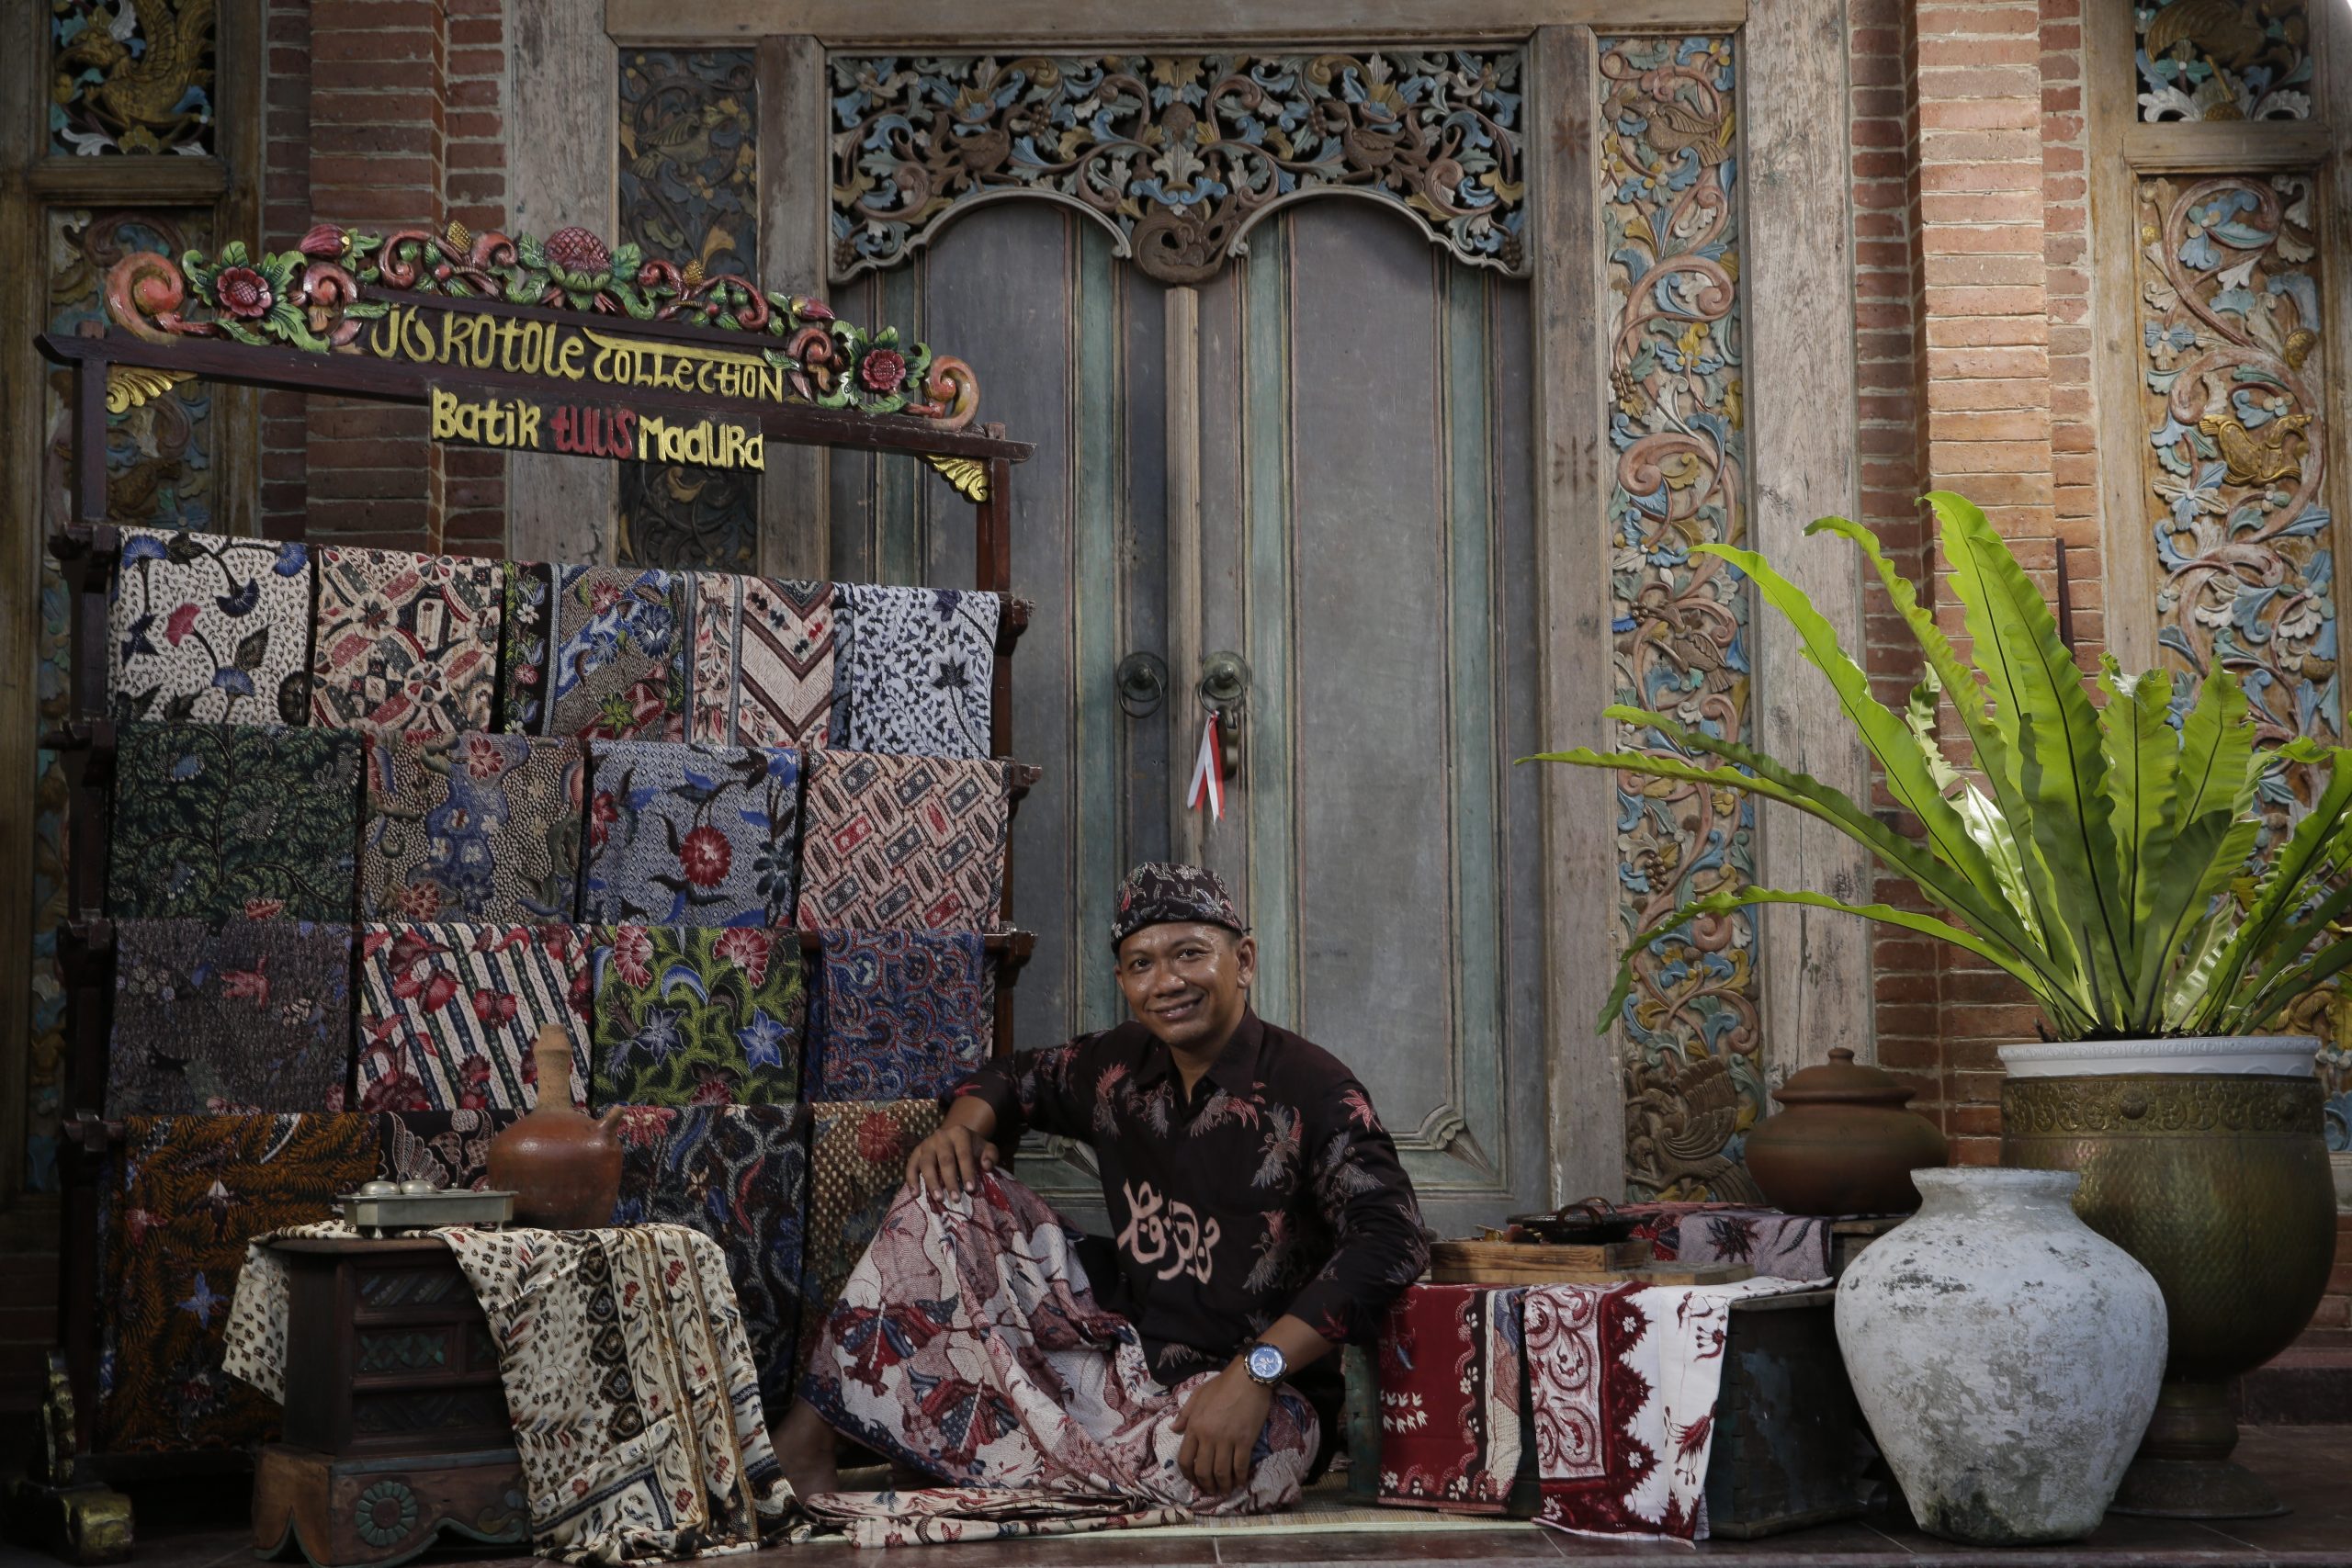 Batik Produksi Jokotole Collection Berhasil Masuki Pasar Internasional